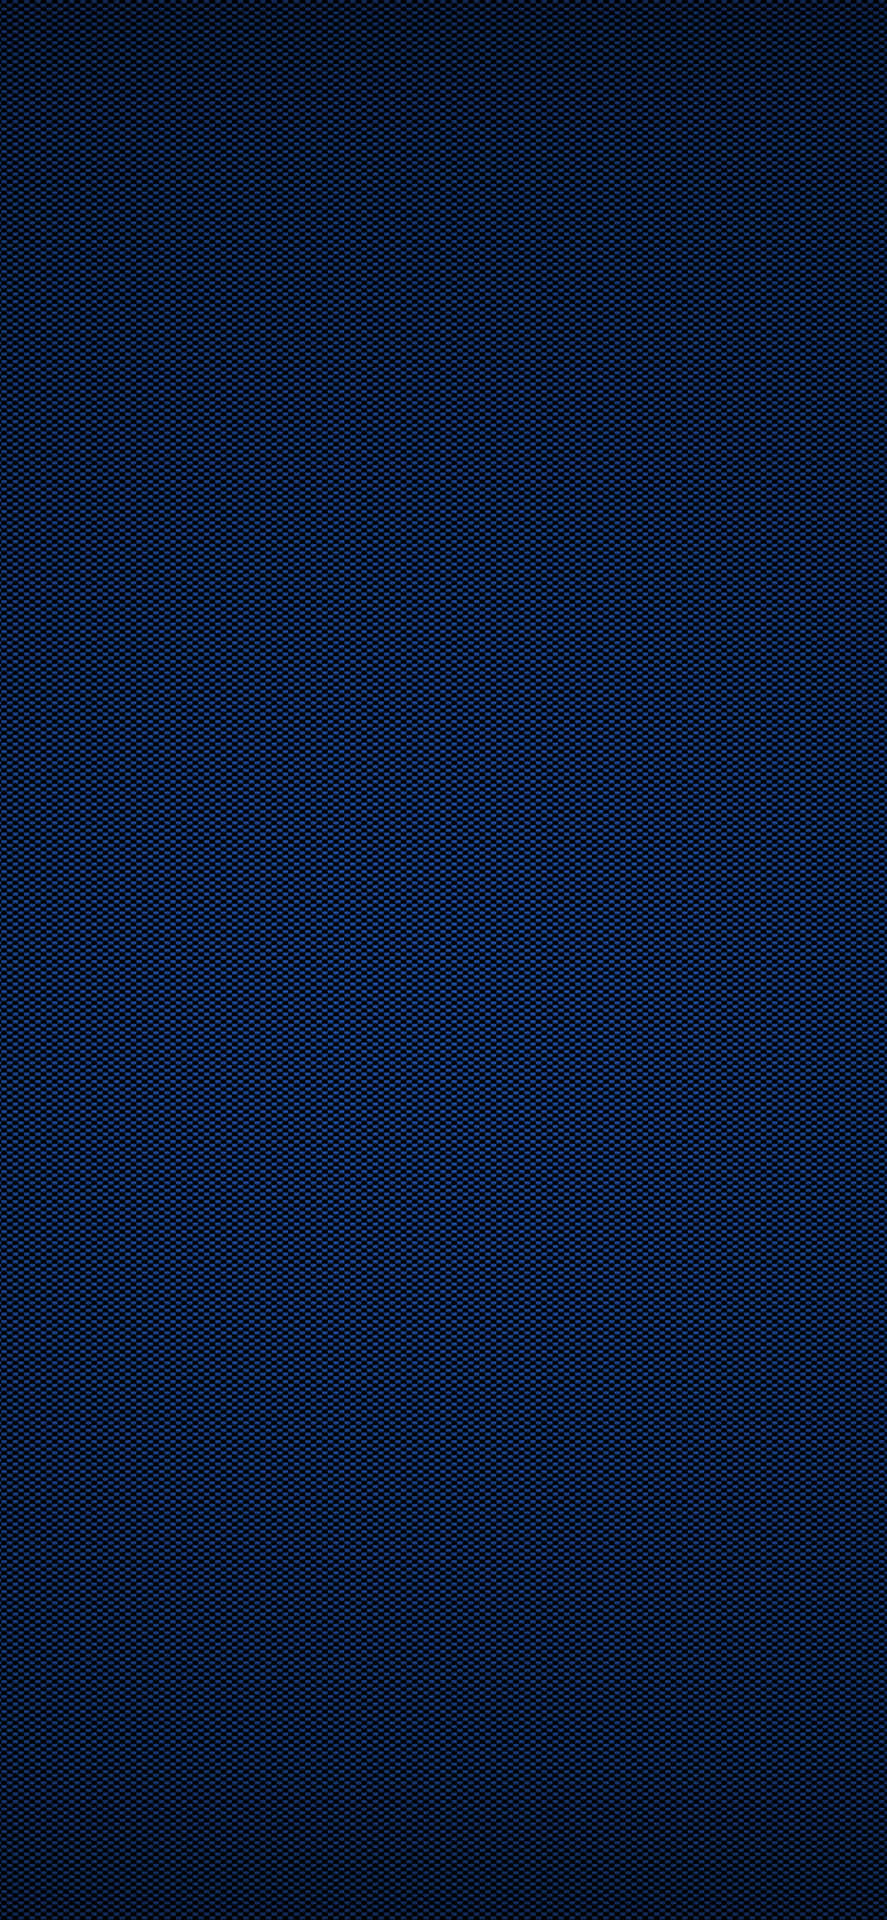 Disfrutadel Aspecto Elegante De Este Vibrante Iphone Xr En Color Azul. Fondo de pantalla